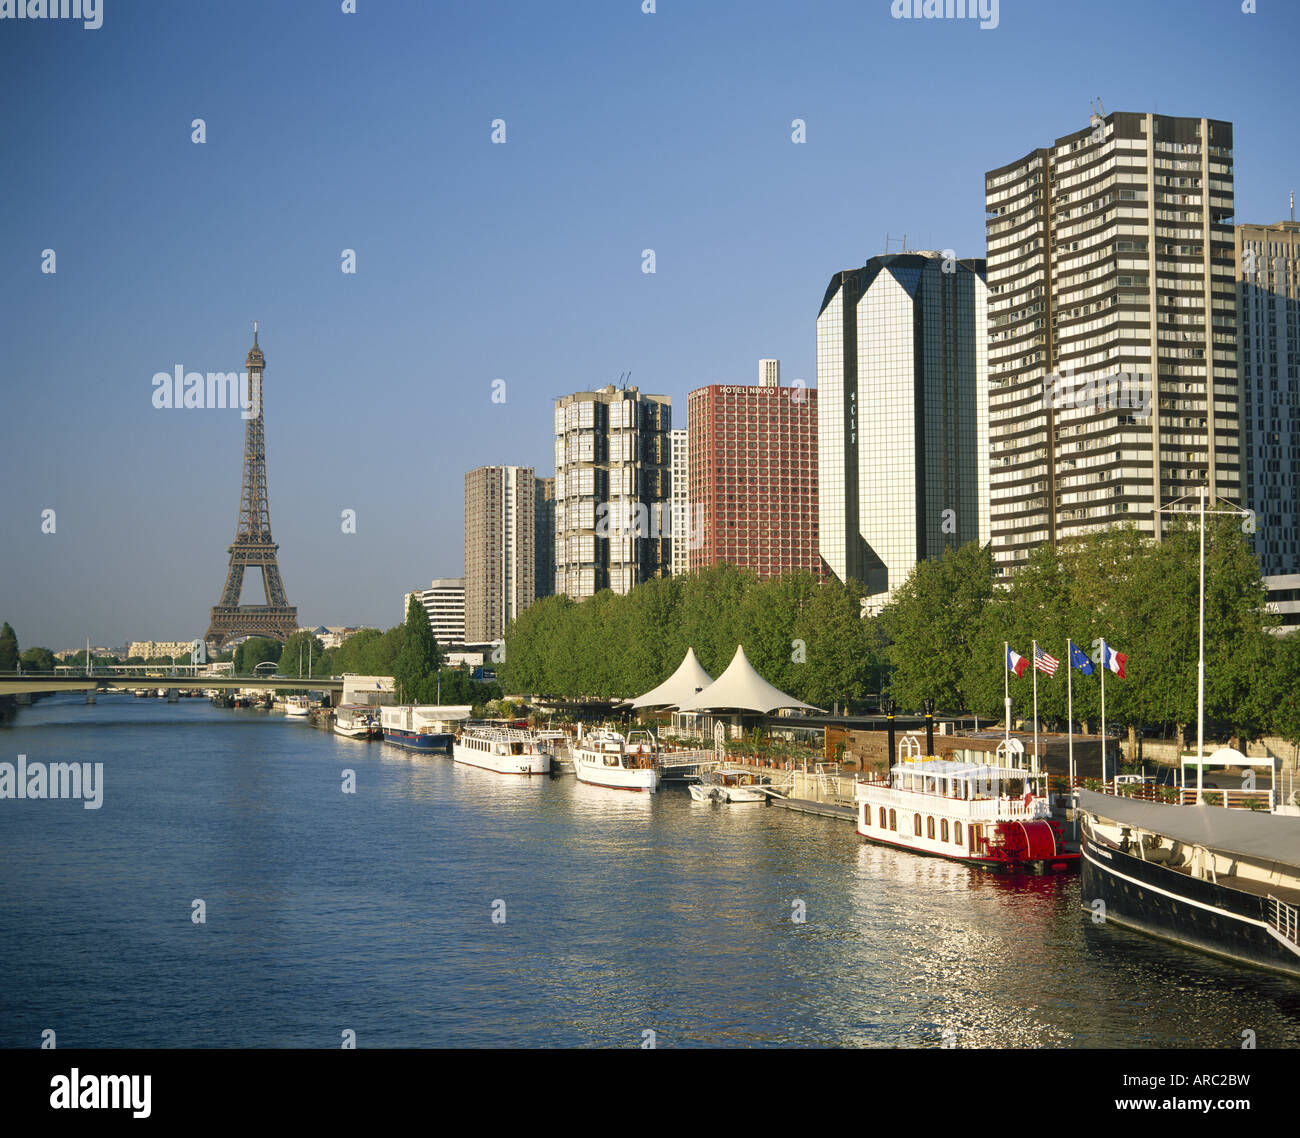 Vue depuis la Seine vers le centre Beaugrenelle et la Tour Eiffel, Paris, France Banque D'Images